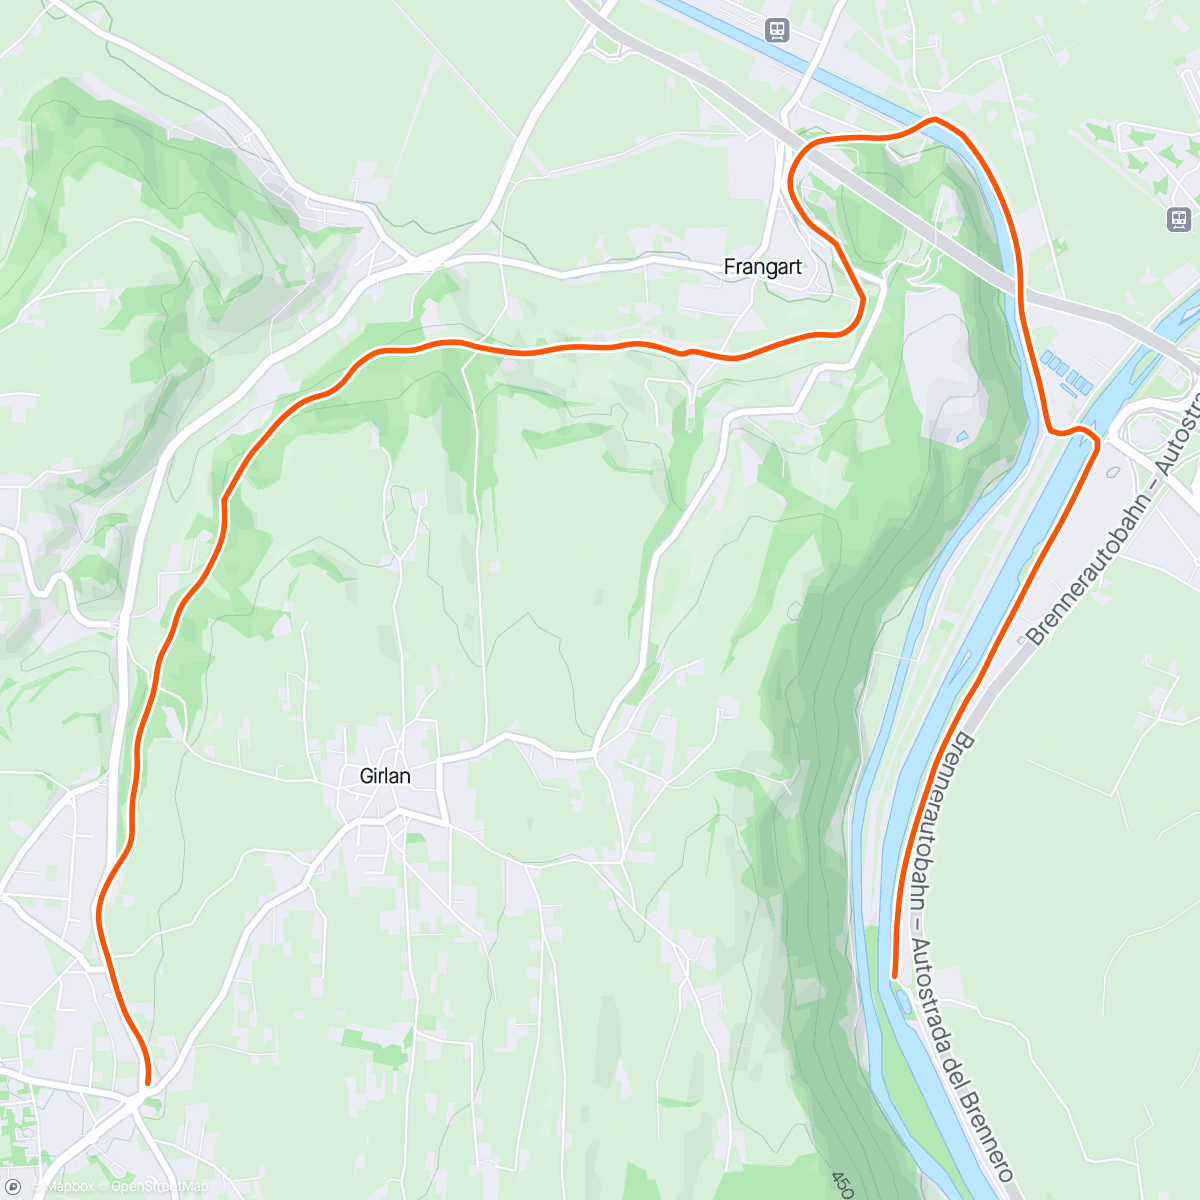 アクティビティ「Kinomap - 30 minutes Fat Burning 🚴‍♀️😎🙌 Indoor Cycling Workout South Tyrol Italy Gopro Max 4K」の地図